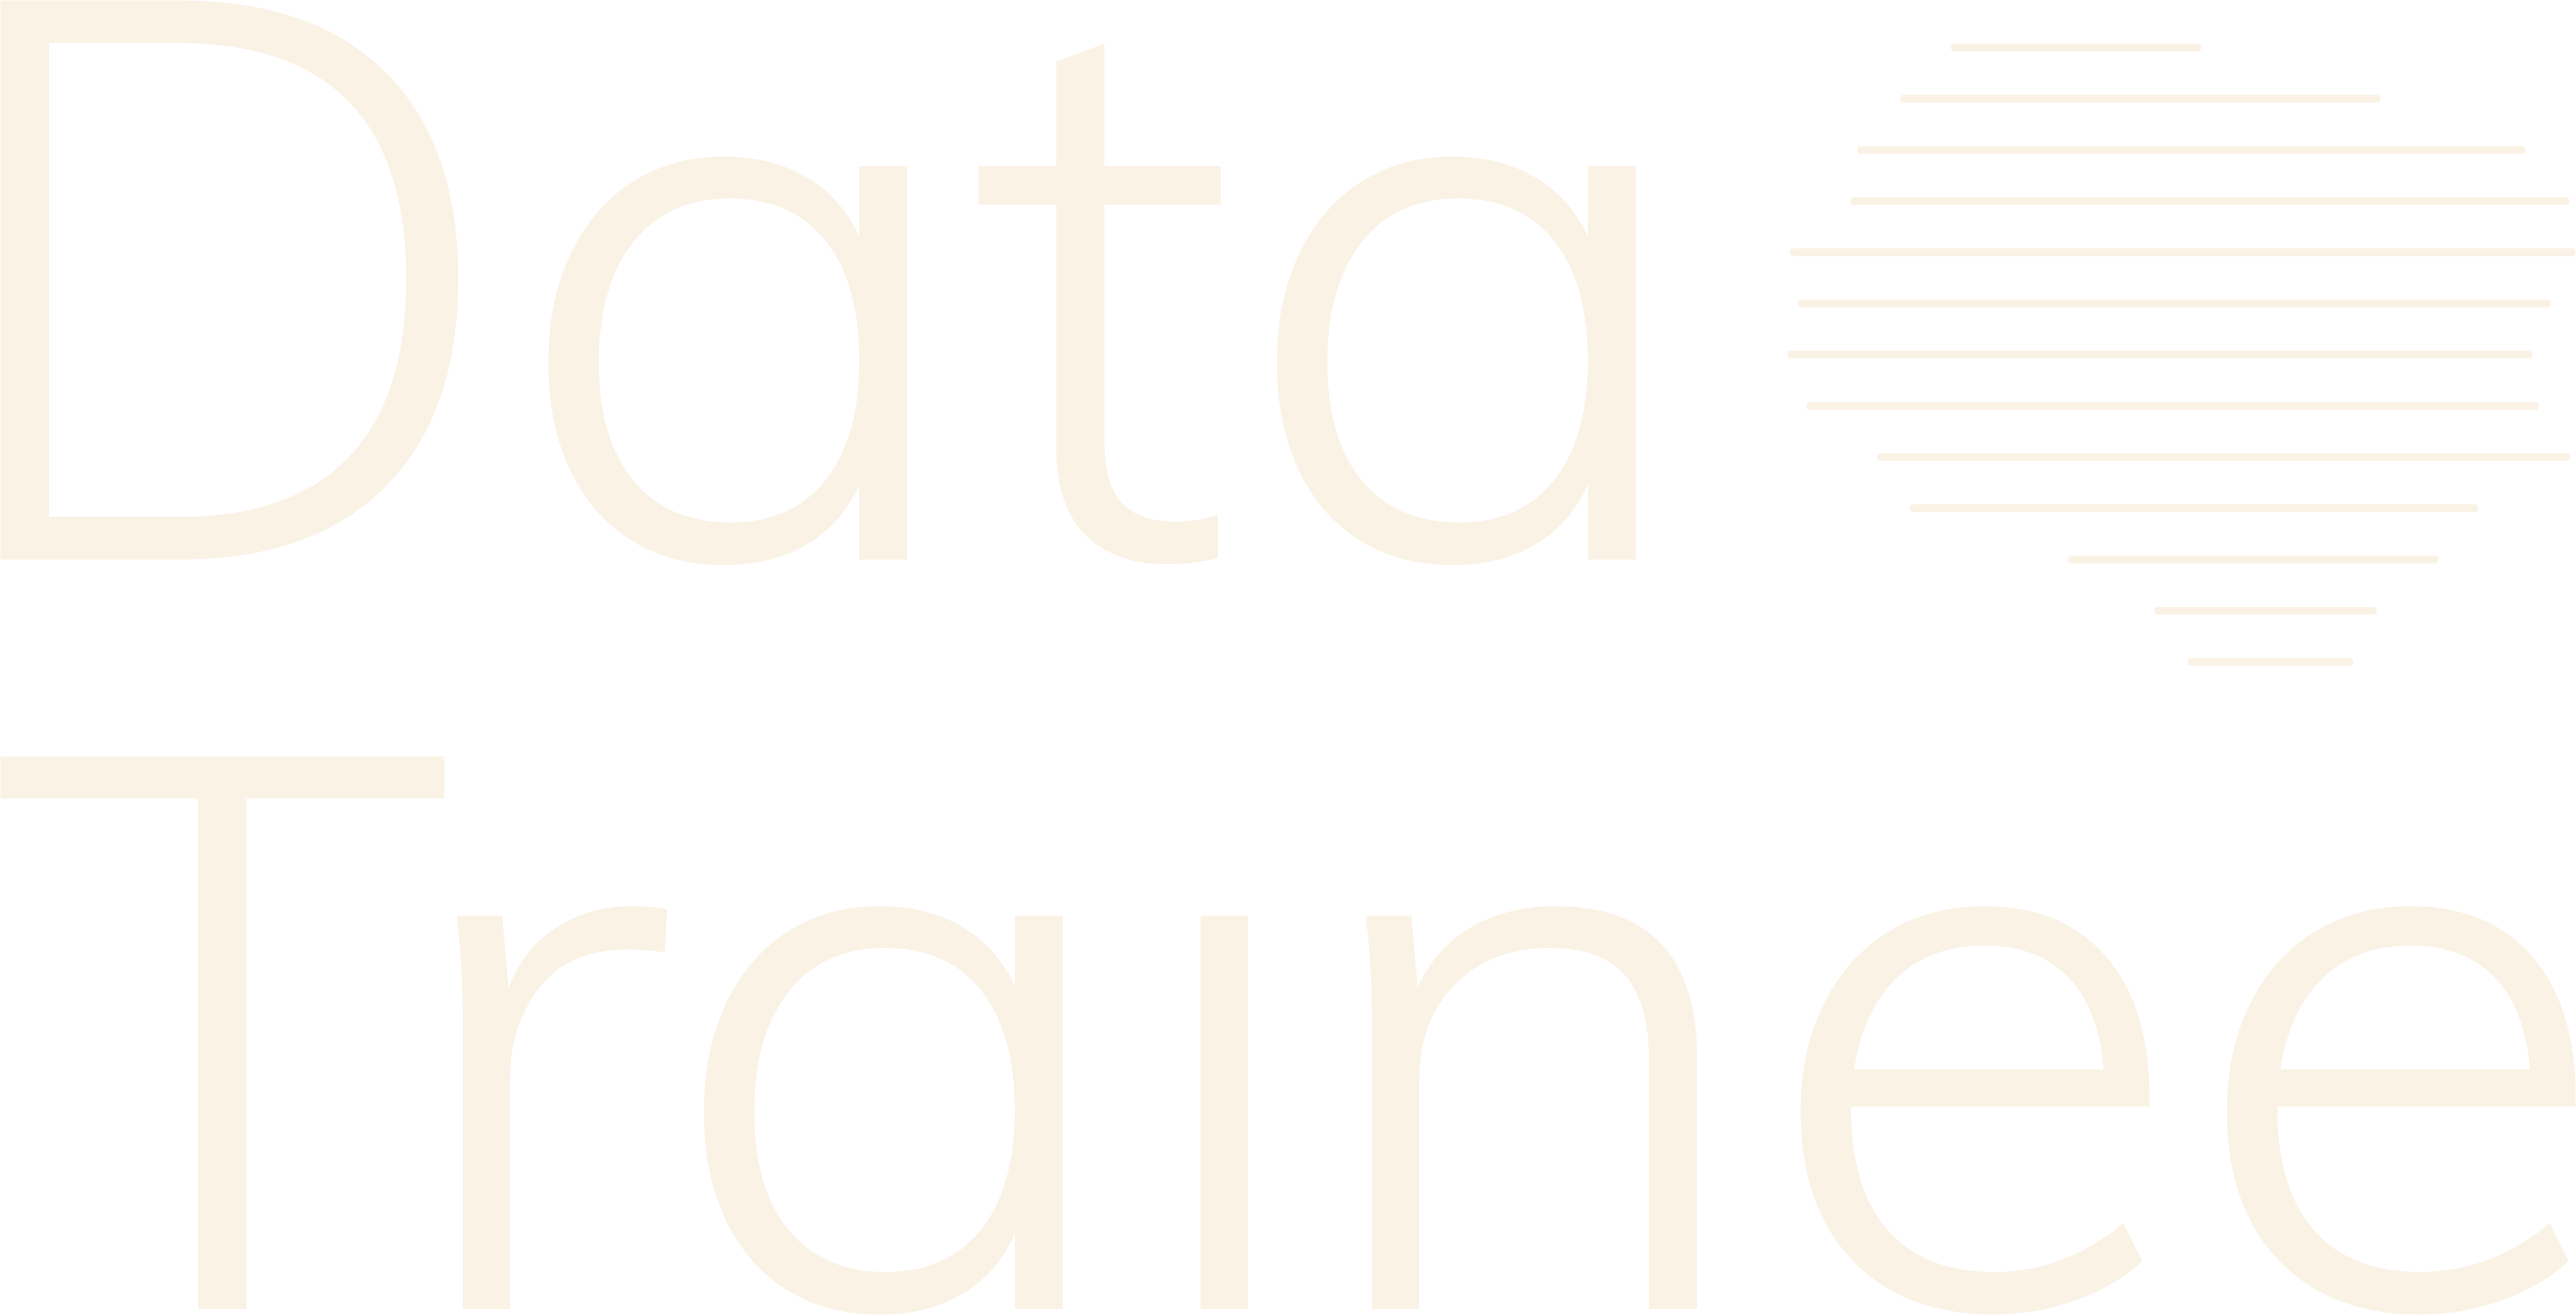 Data Trainee